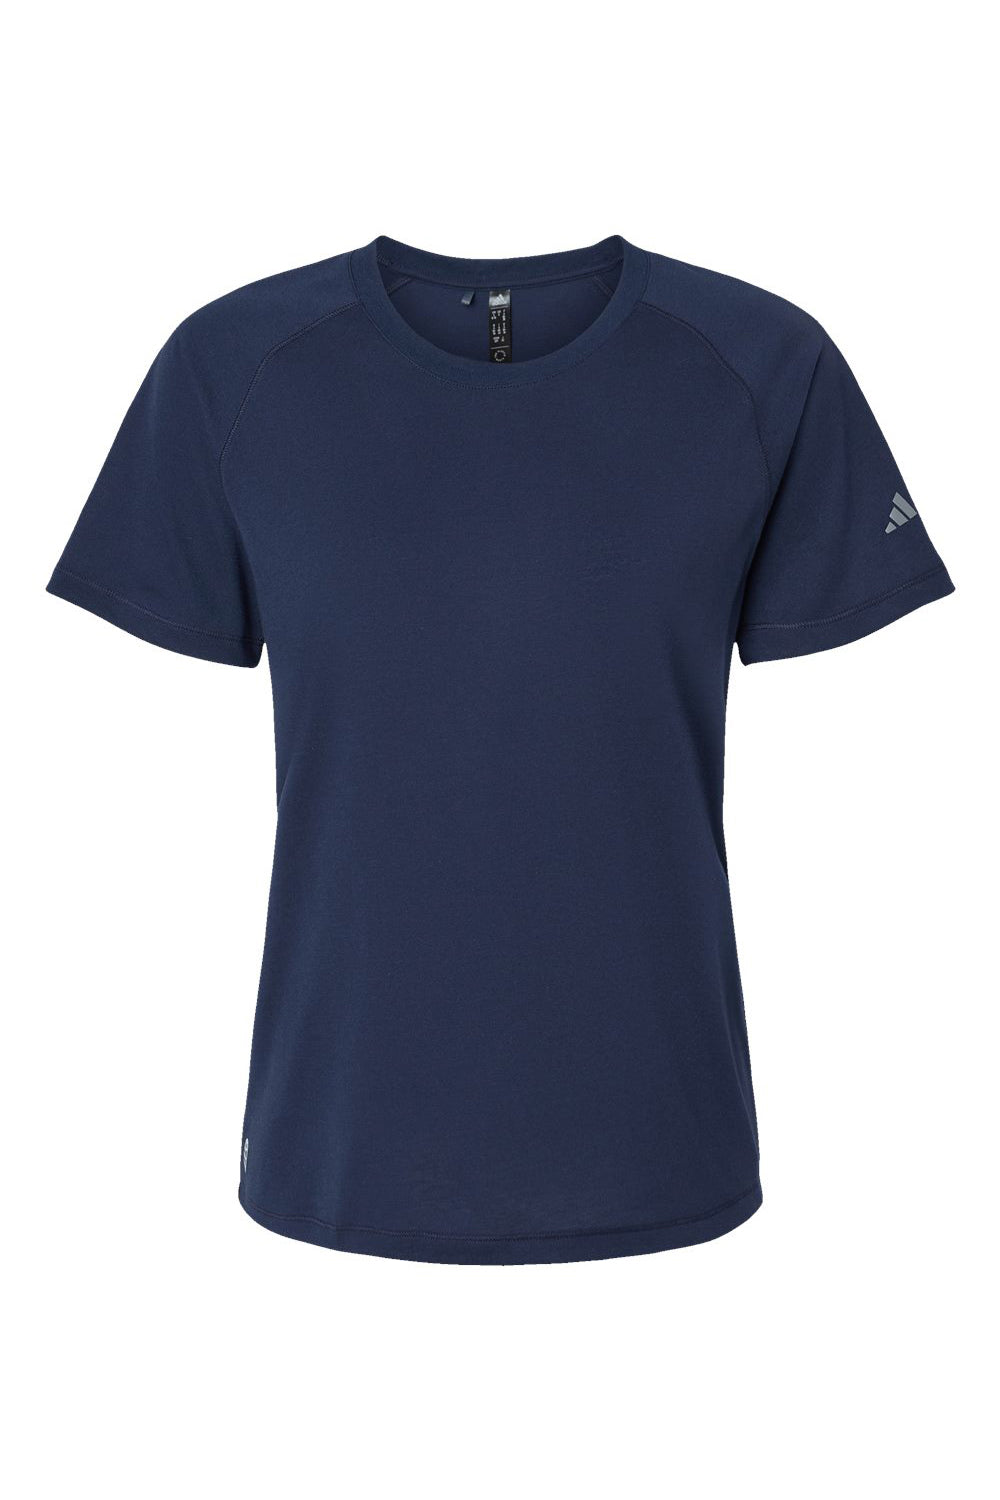 Adidas A557 Womens Short Sleeve Crewneck T-Shirt Collegiate Navy Blue Flat Front